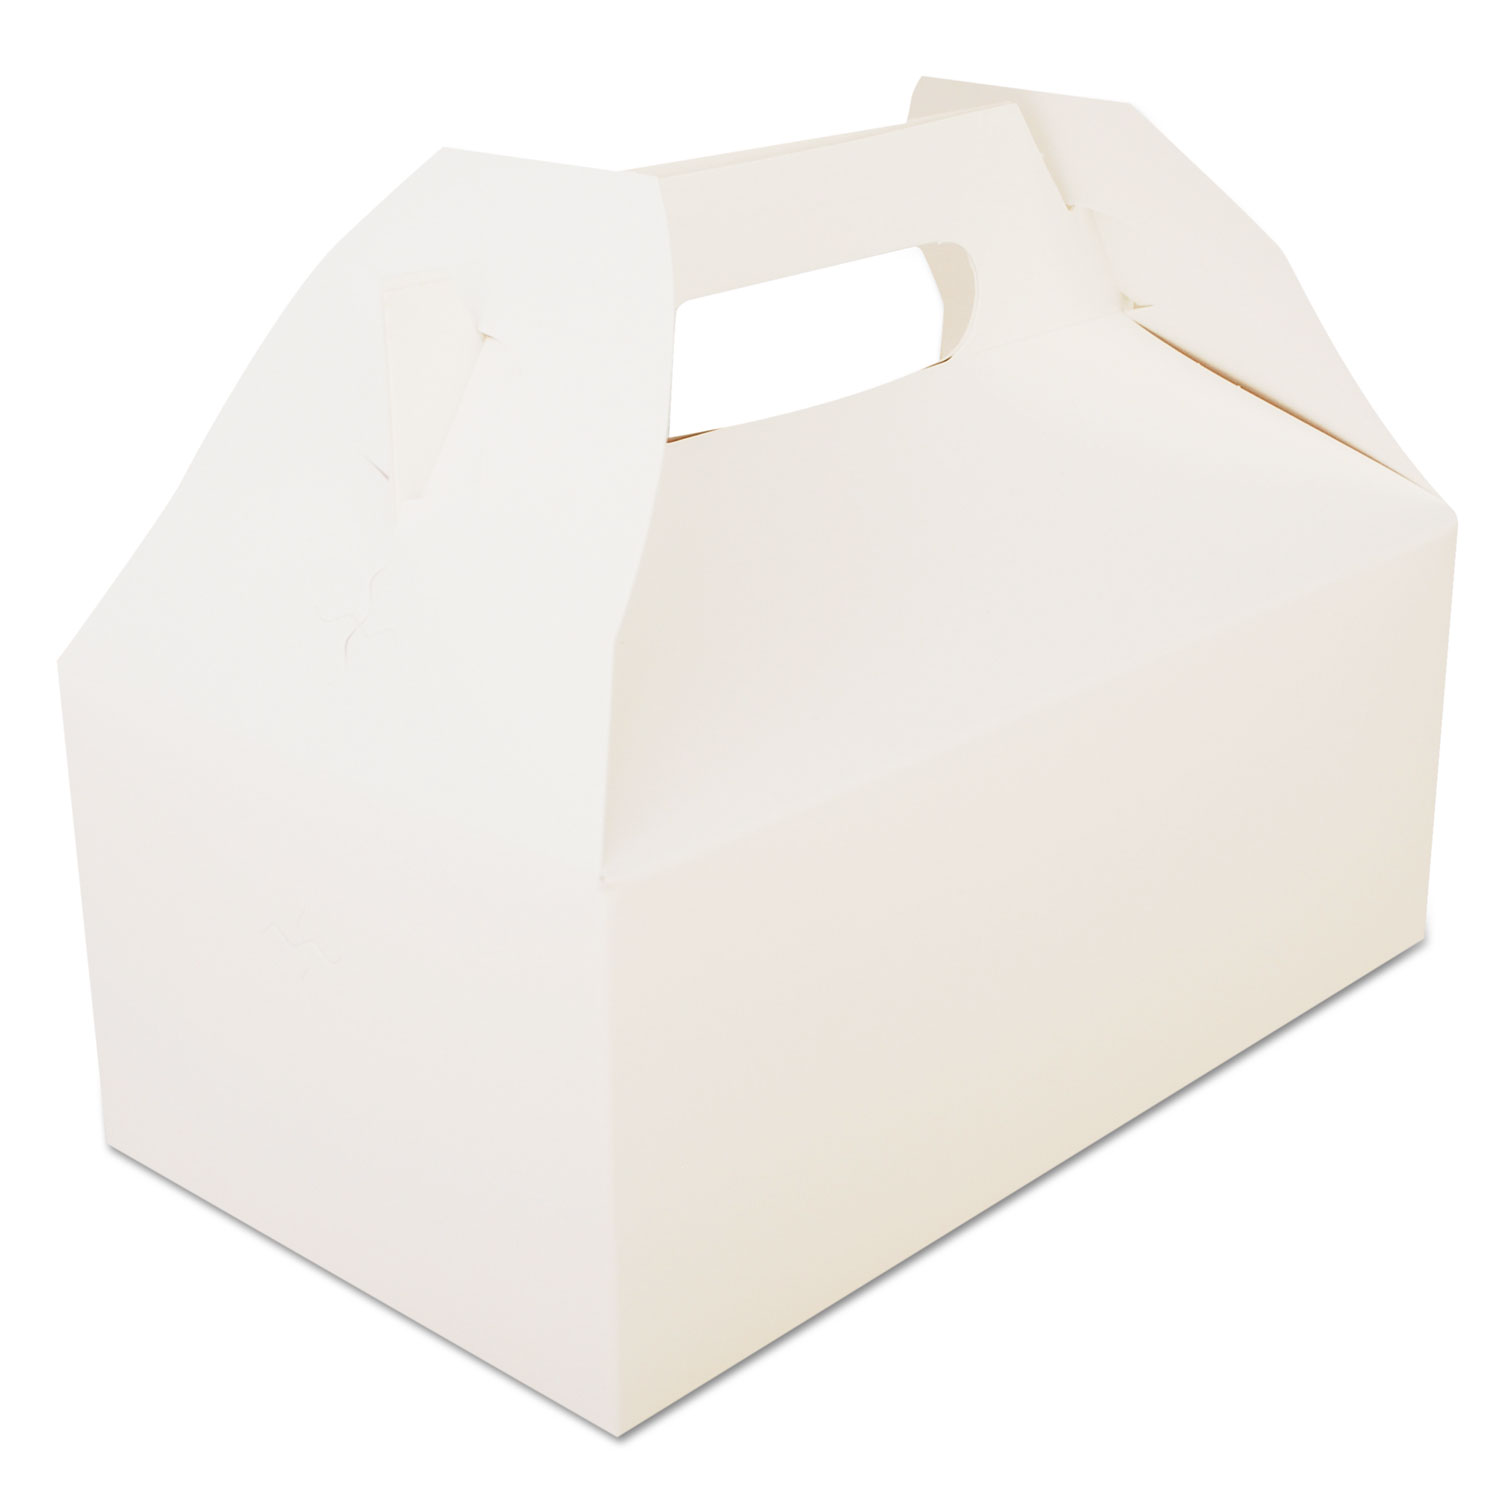 Carryout Barn Boxes, 8 7/8 x 5 x 3 1/2, White, 250/Carton